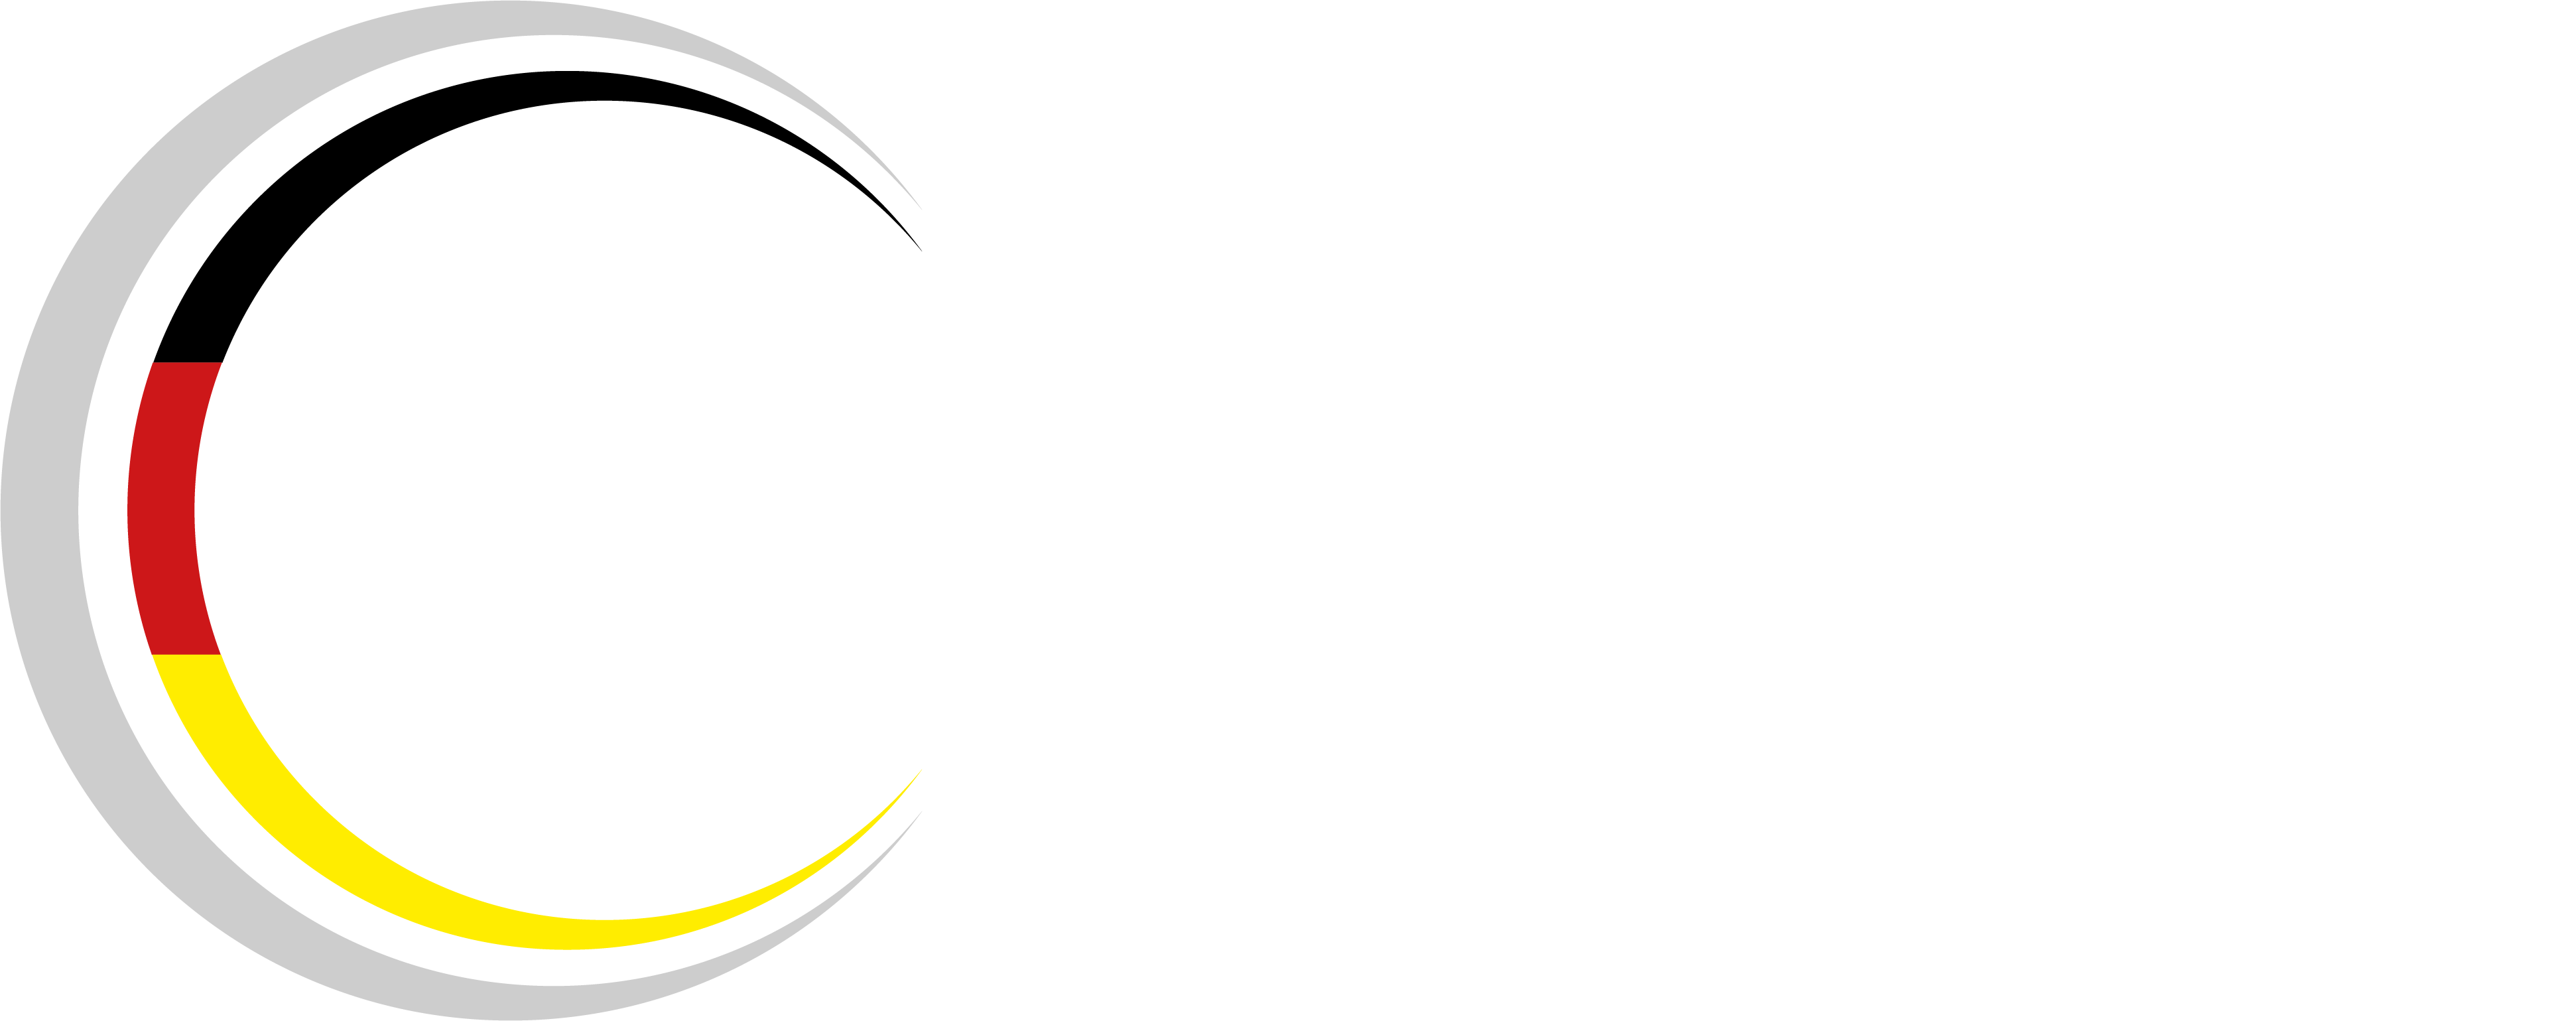 IfDQ - Institut für Digitale Qualitätssicherung